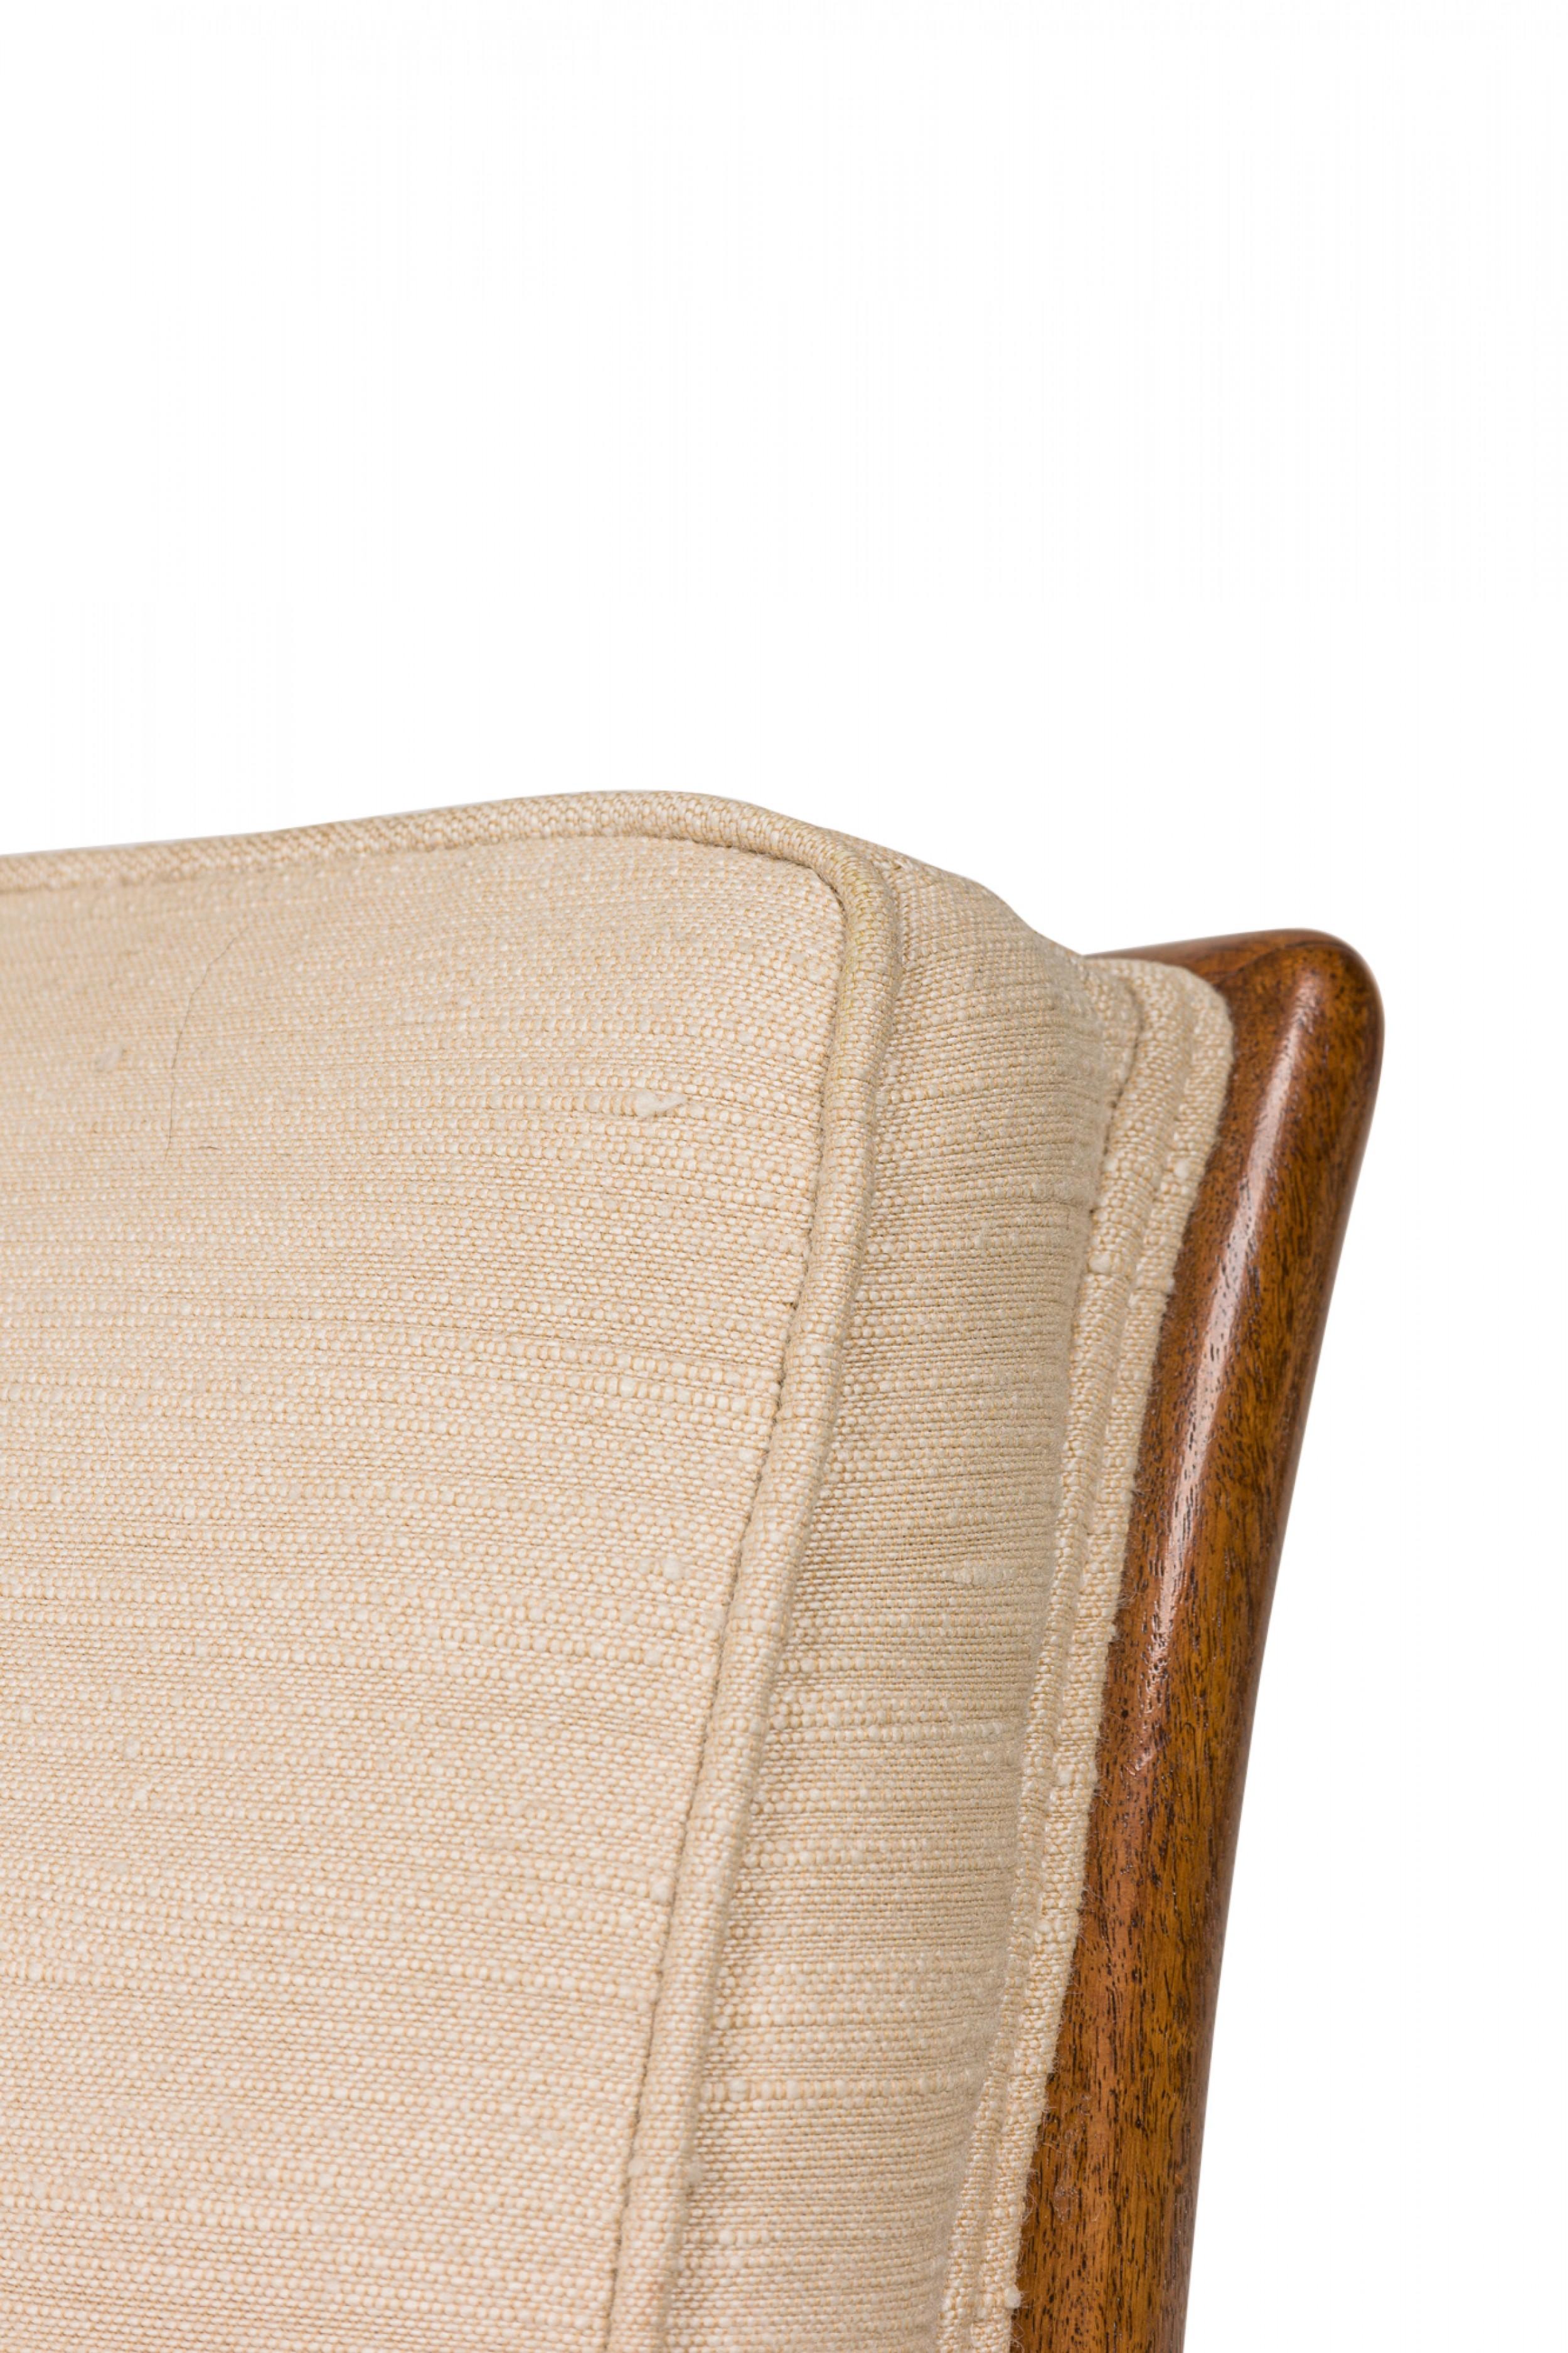 T.H. Robsjohn-Gibbings / Widdicomb Beige Fabric Upholstered Walnut Slipper  For Sale 4